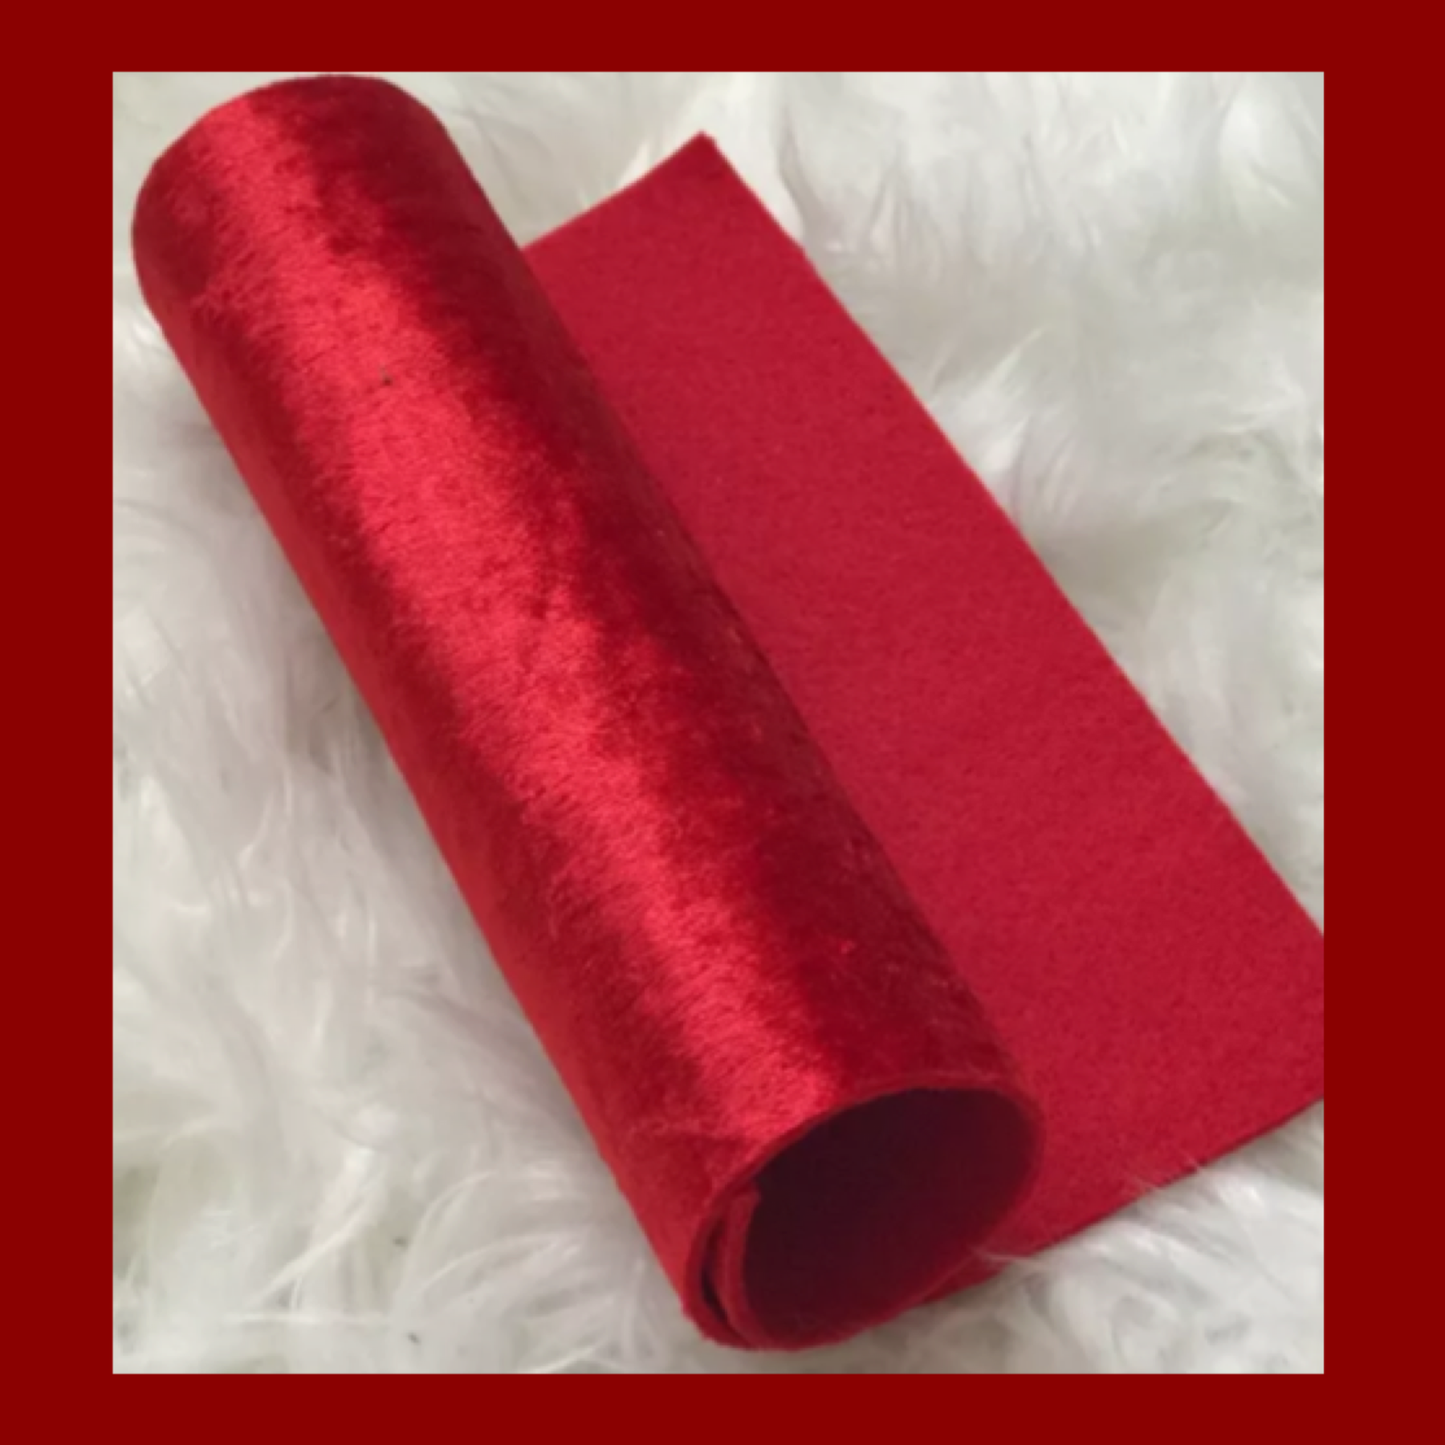 Red Felt backed  velvet fabric ( fabric felt)